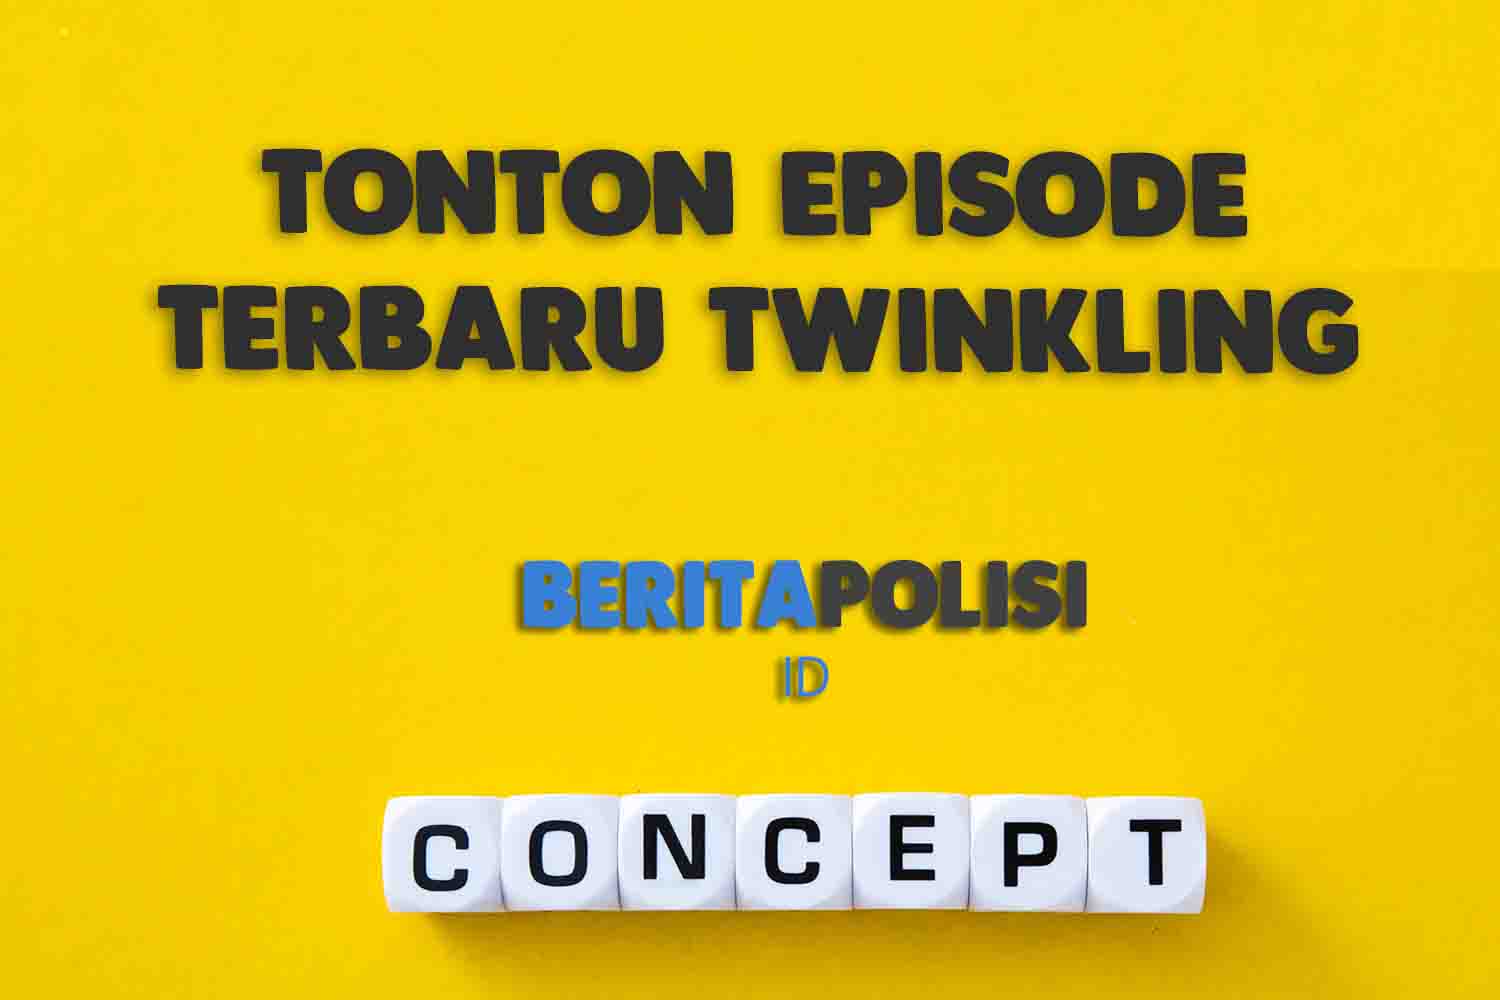 Tonton Episode Terbaru Twinkling Watermelon Link Nonton Drakor Episode 3 Legal Dan Sub Indo Siap Disajikan